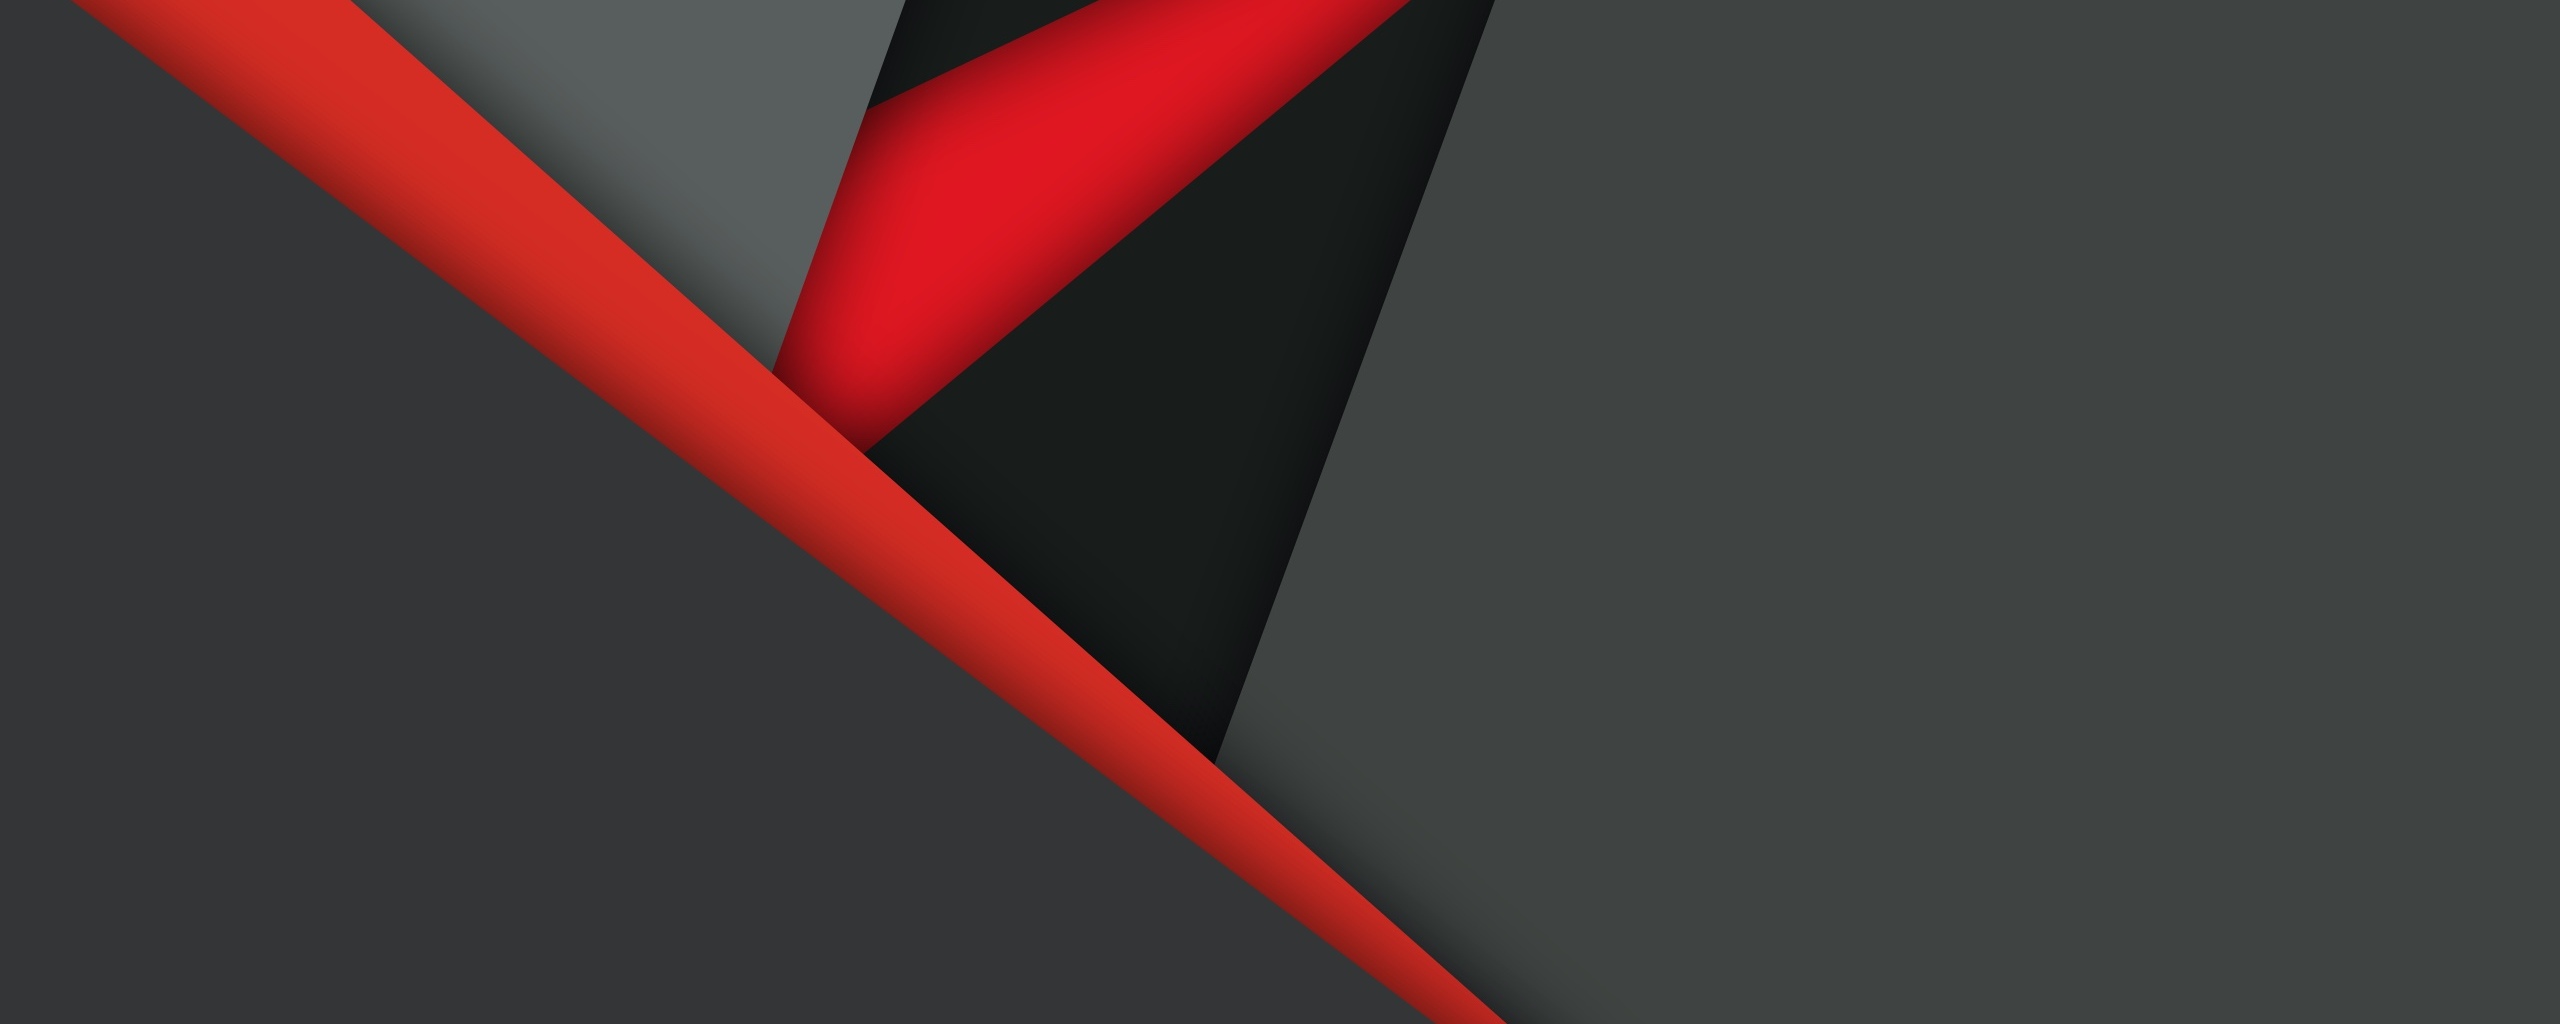 material-design-dark-red-black-ap.jpg